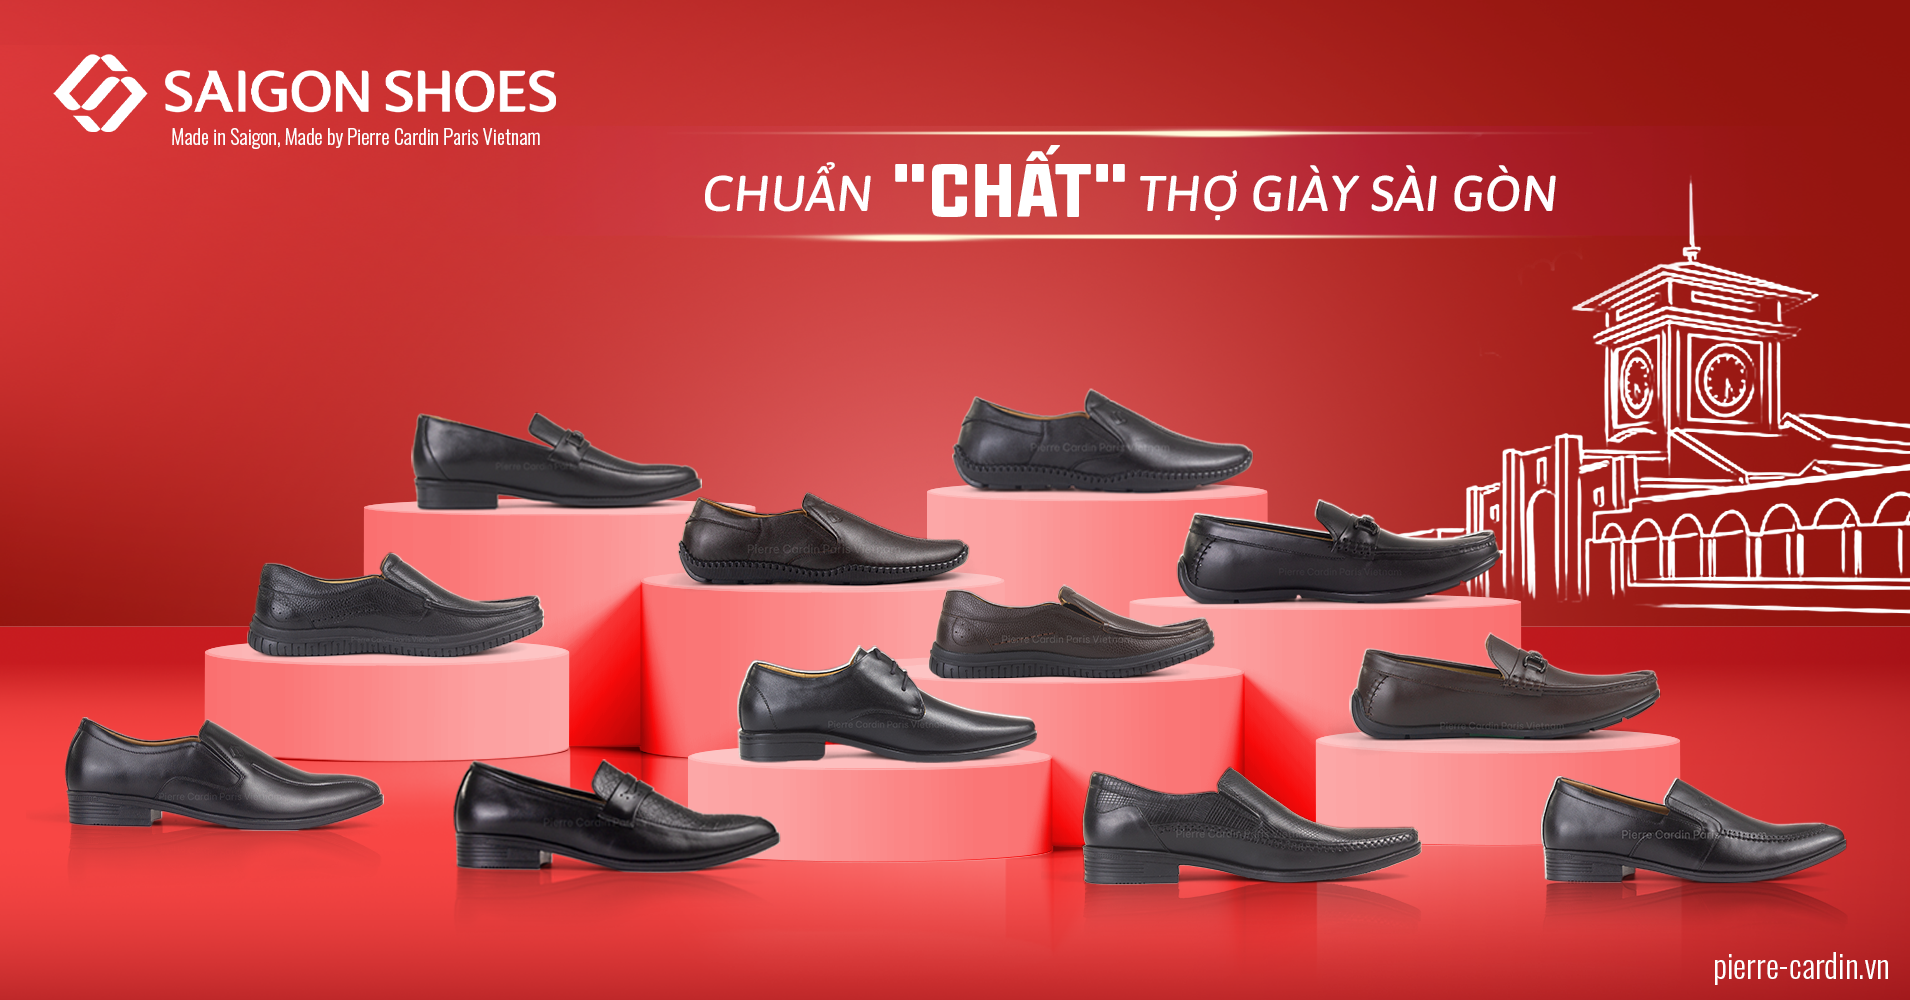 Thương hiệu Saigon Shoes